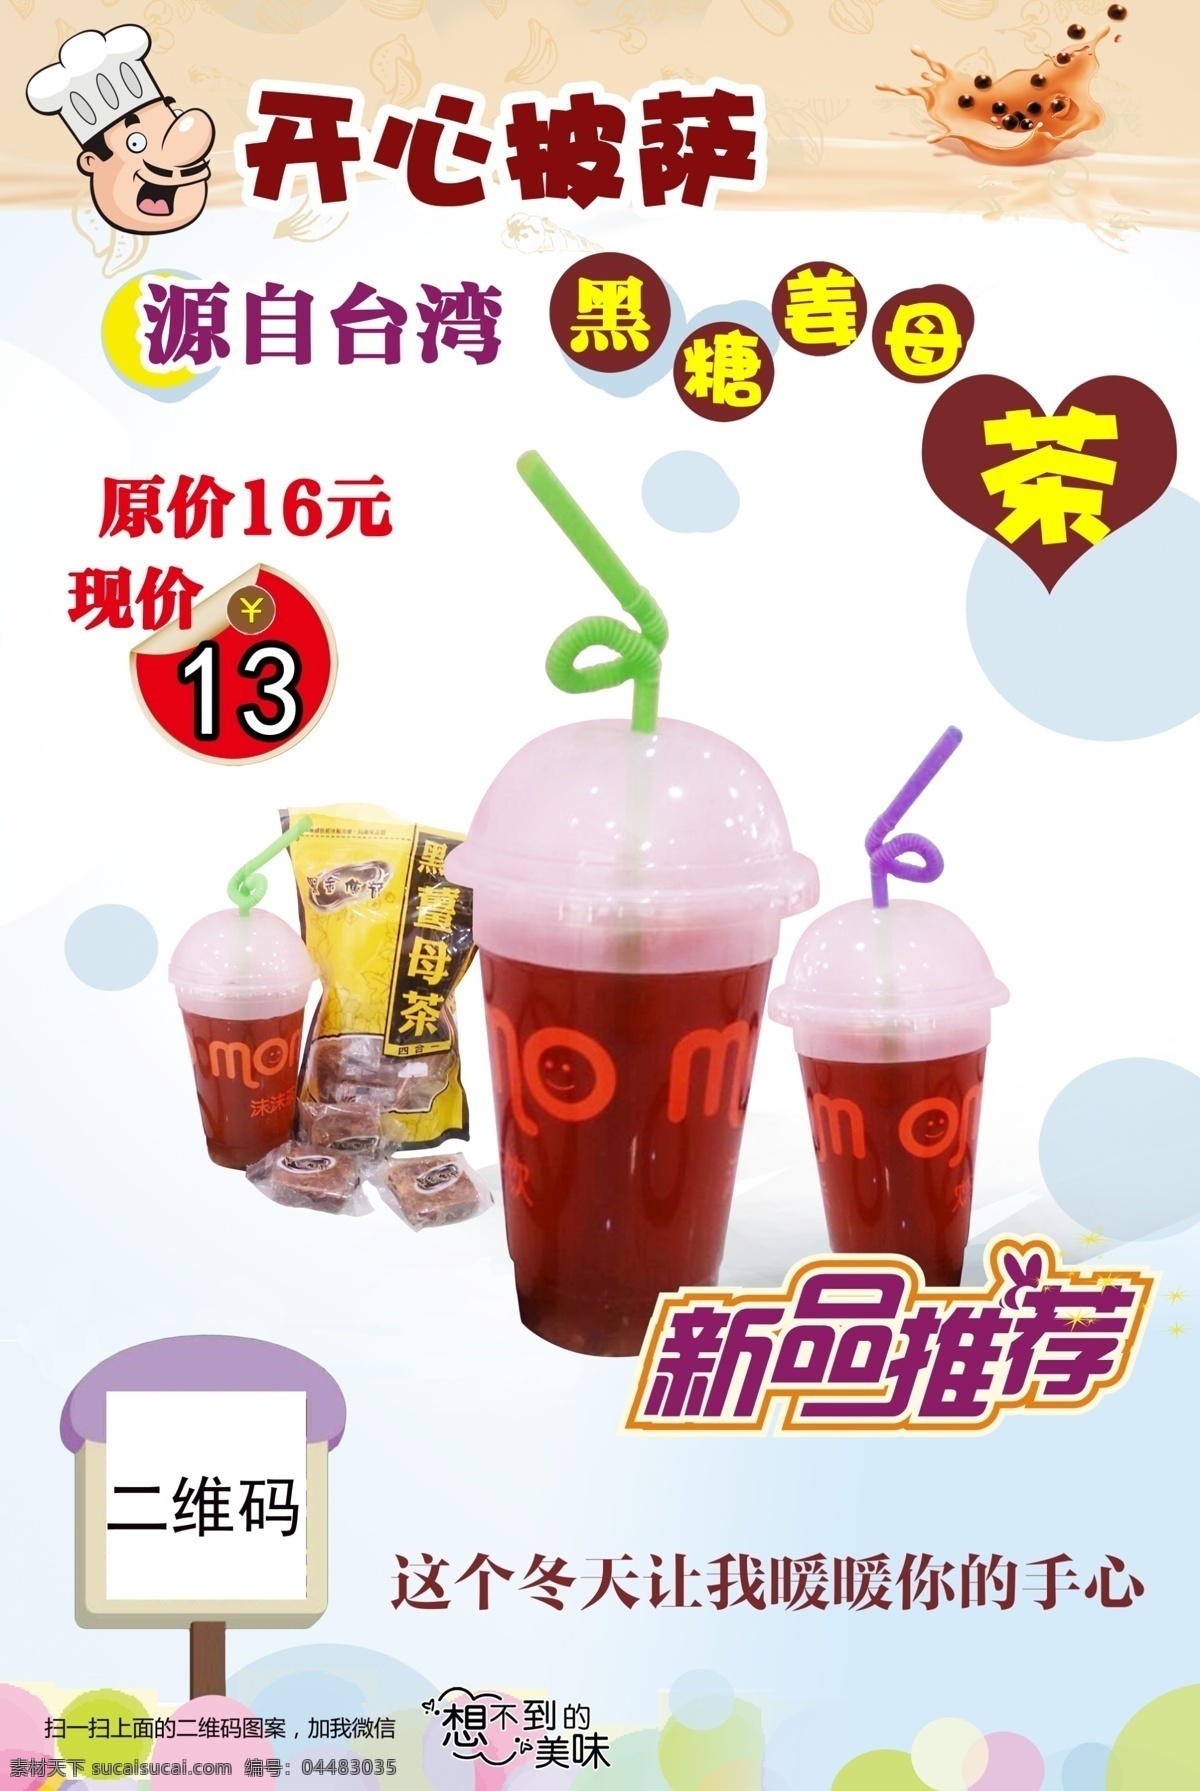 奶茶店 促销 海报 奶茶促销海报 促销海报 二维码 粉色 姜母茶 开心披萨 果汁 饮料 饮品 白色